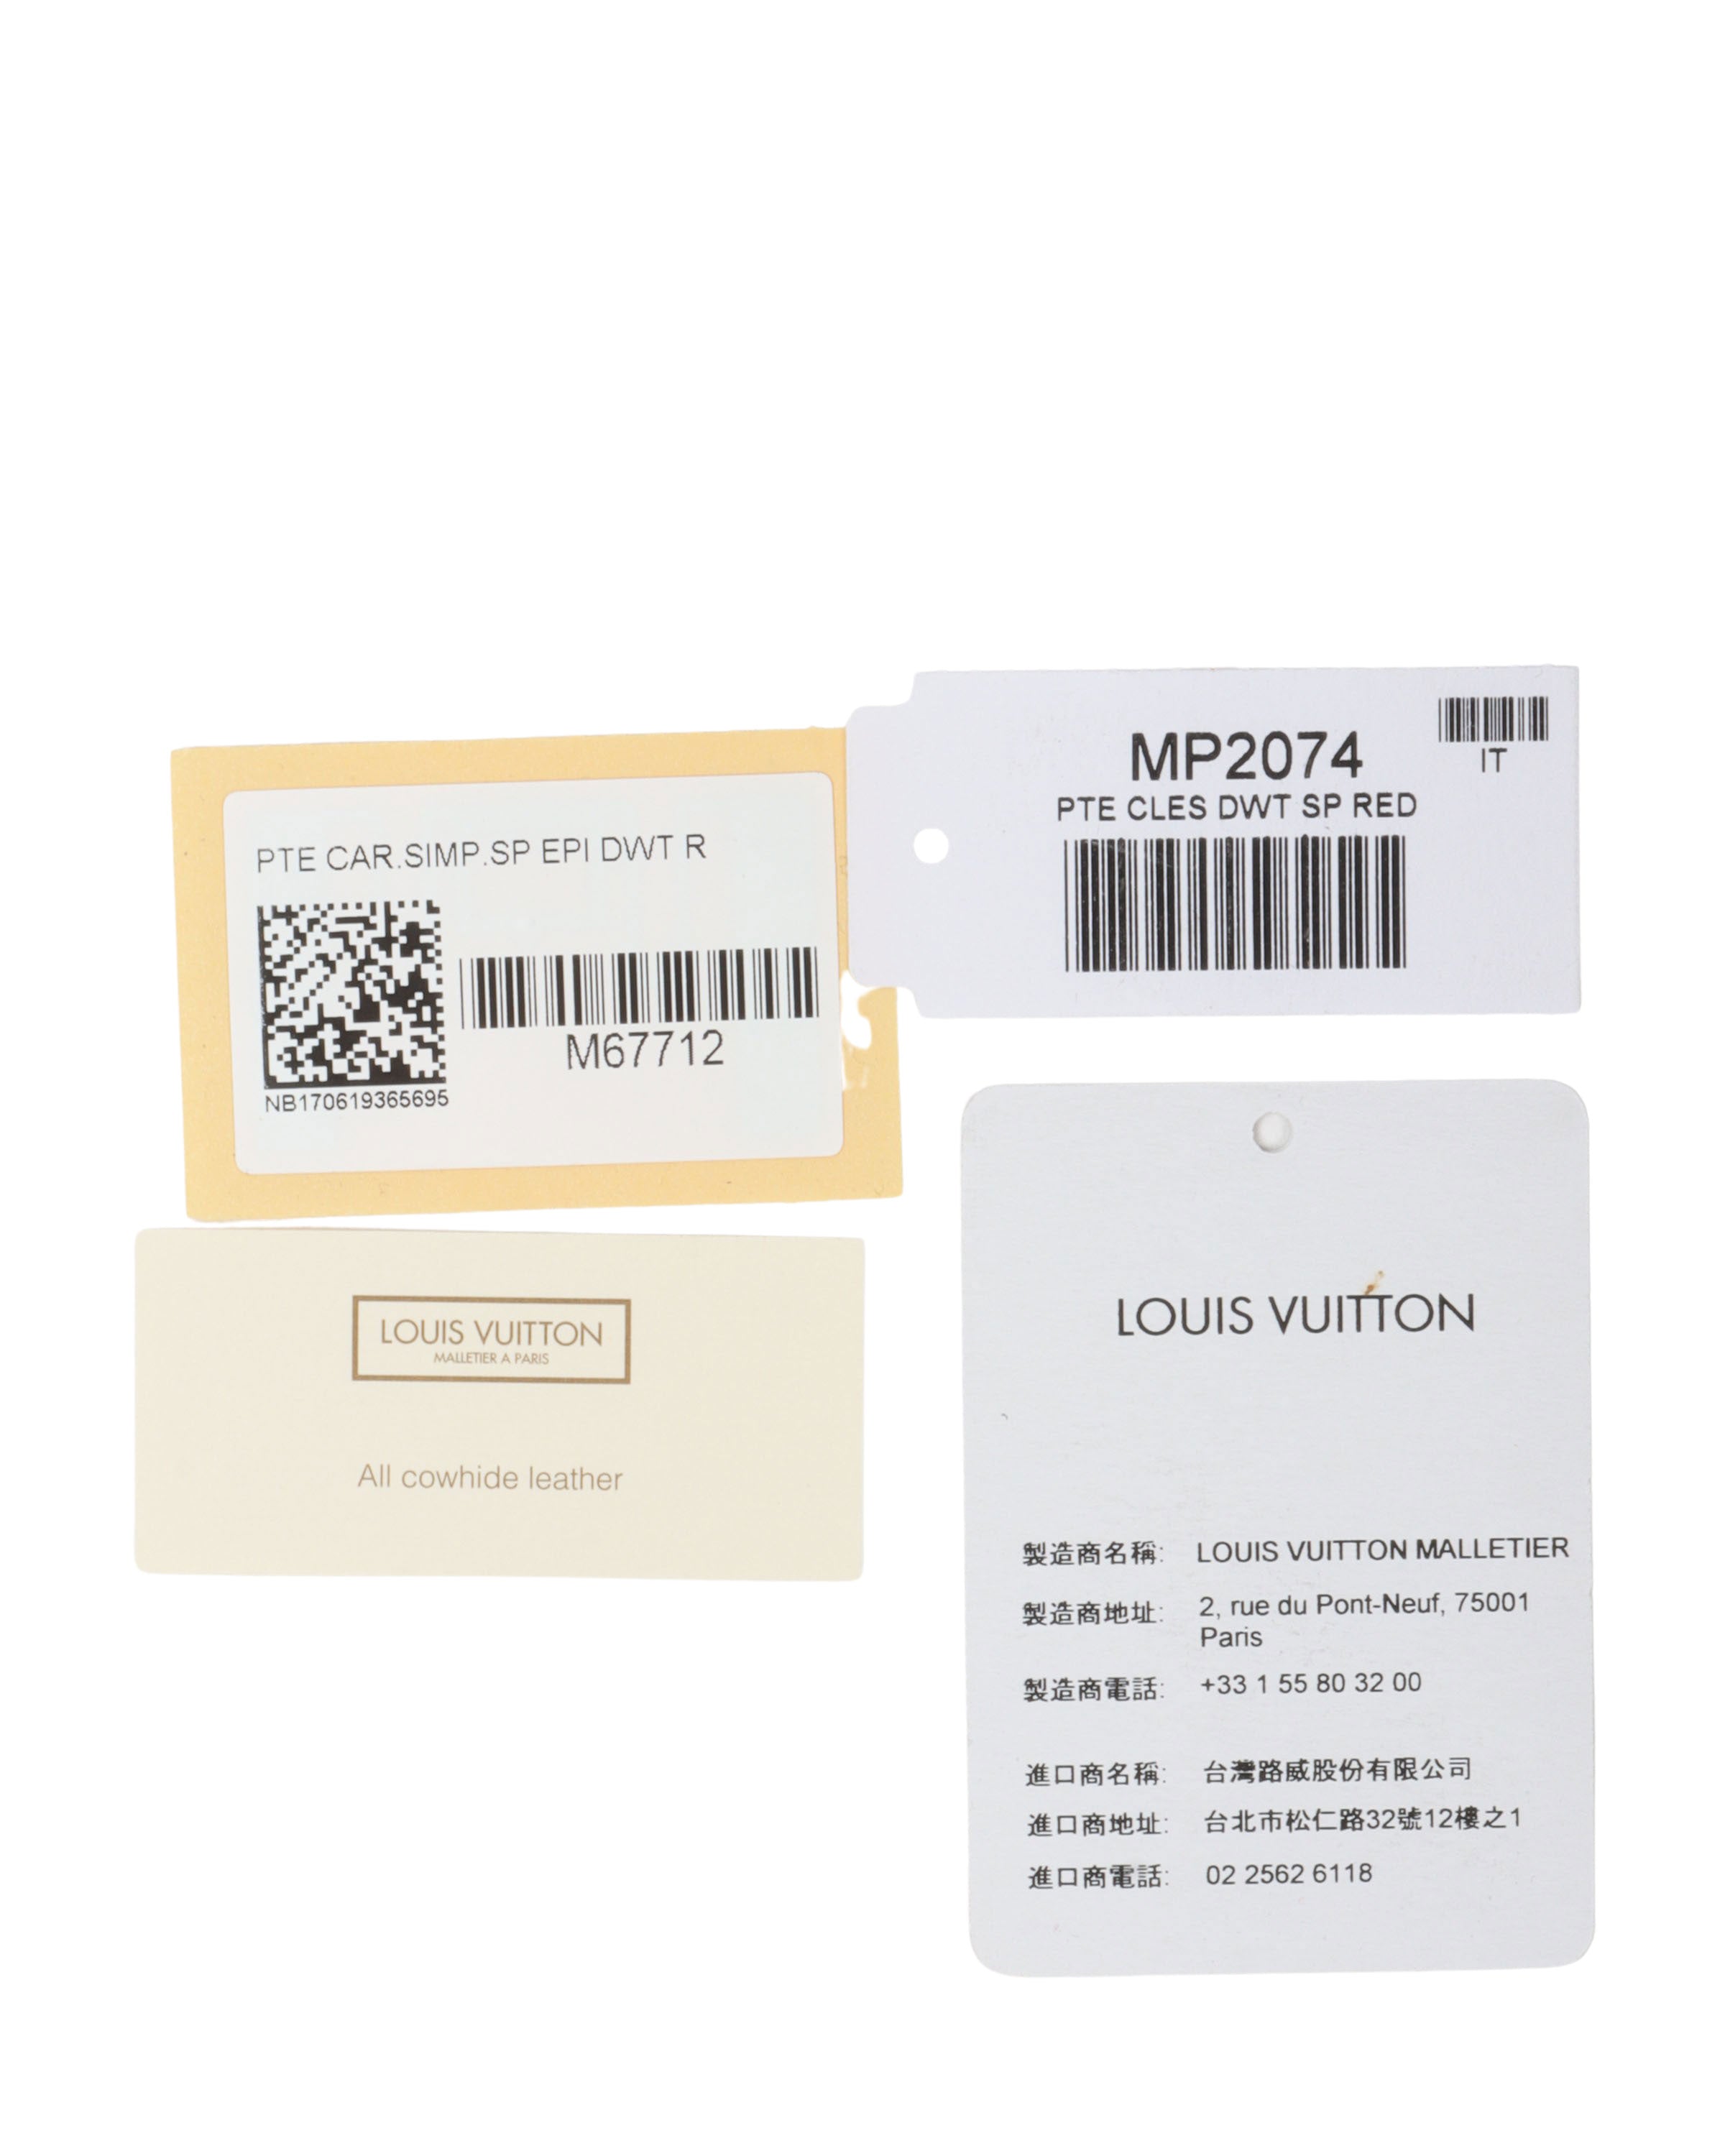 Louis Vuitton Malletier Paris 1e (75001)